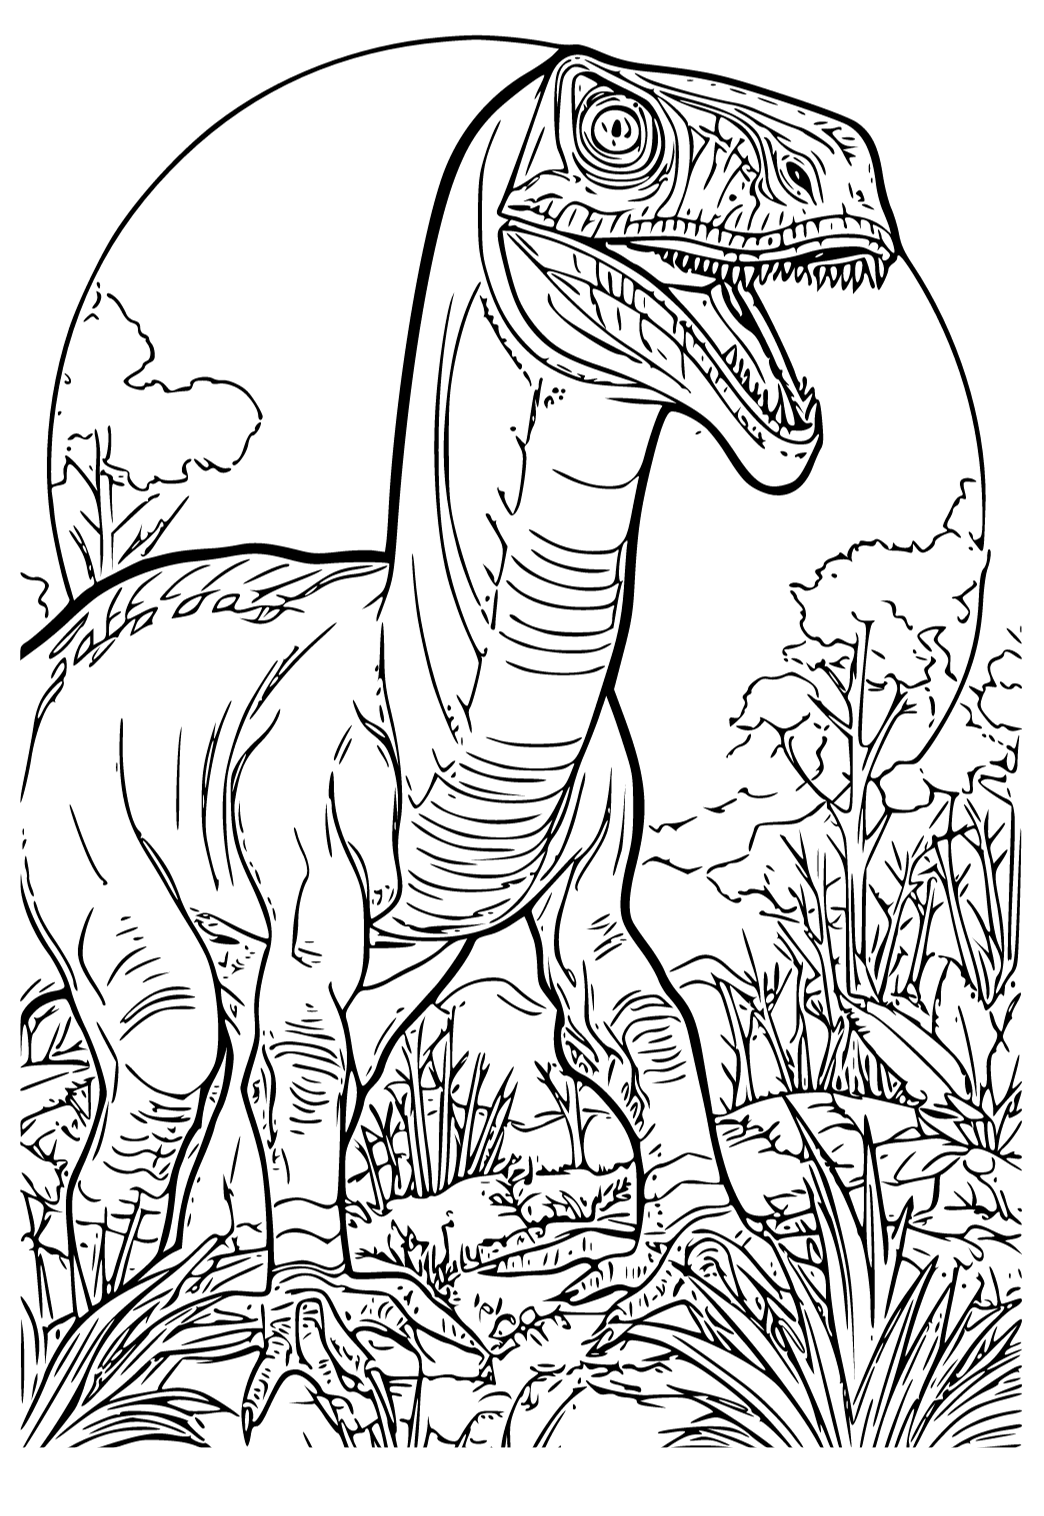 ديناصور